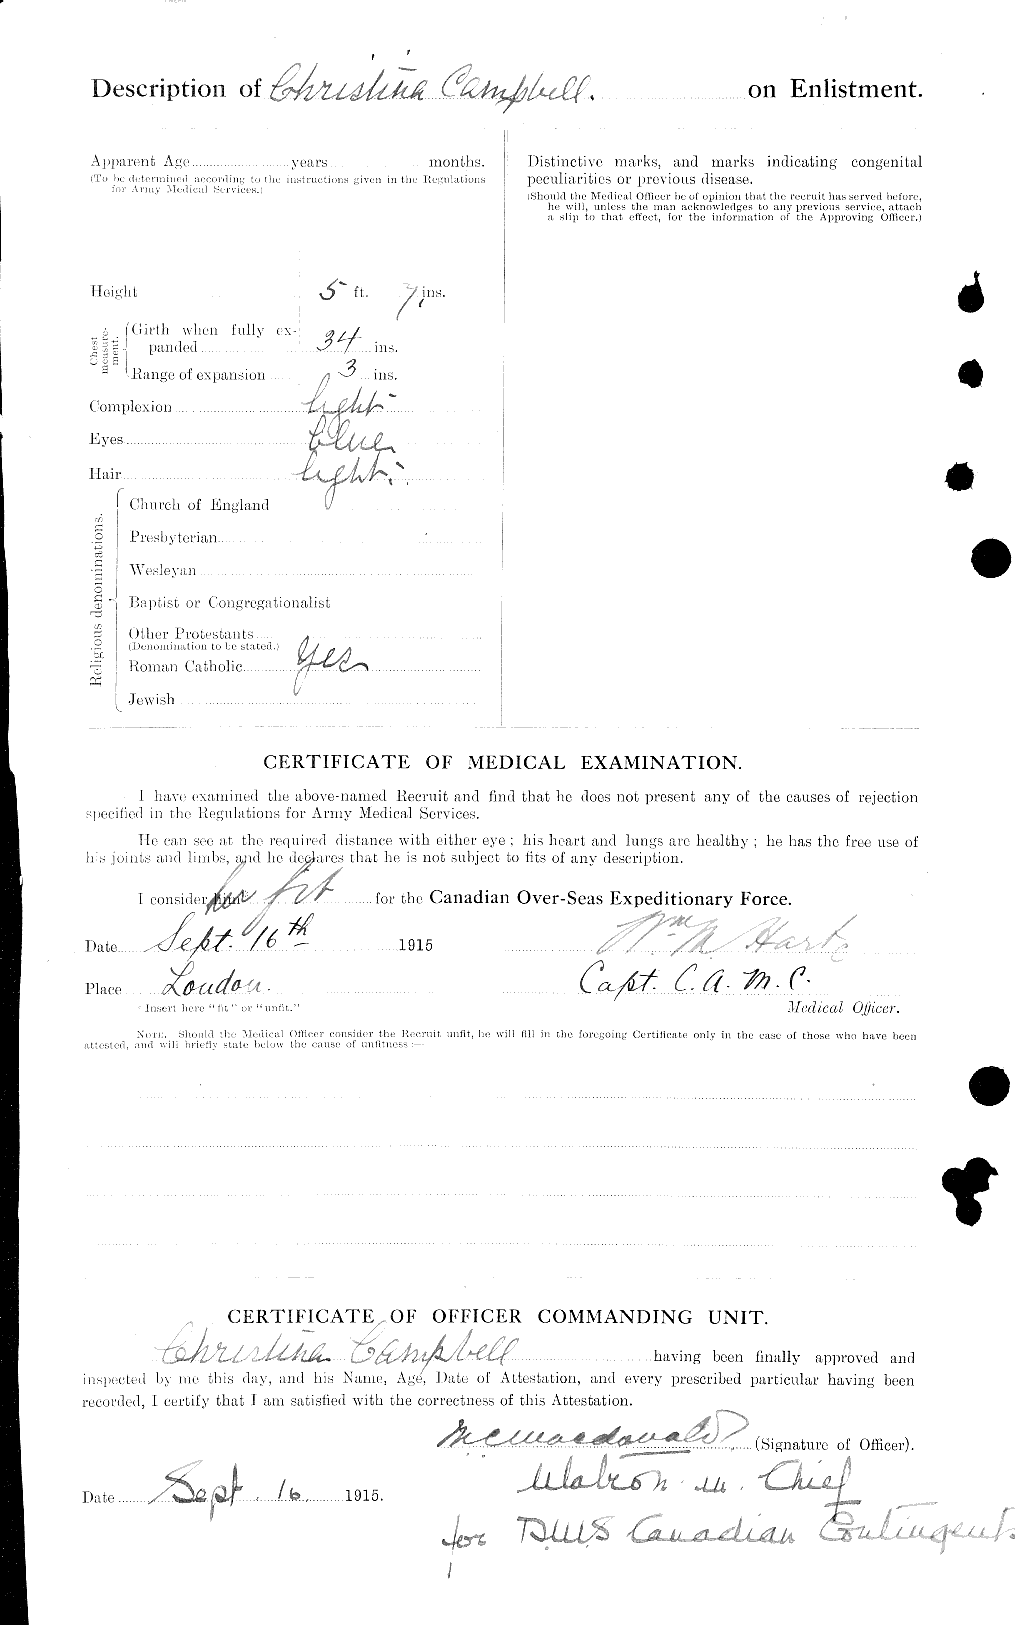 Dossiers du Personnel de la Première Guerre mondiale - CEC 008085b